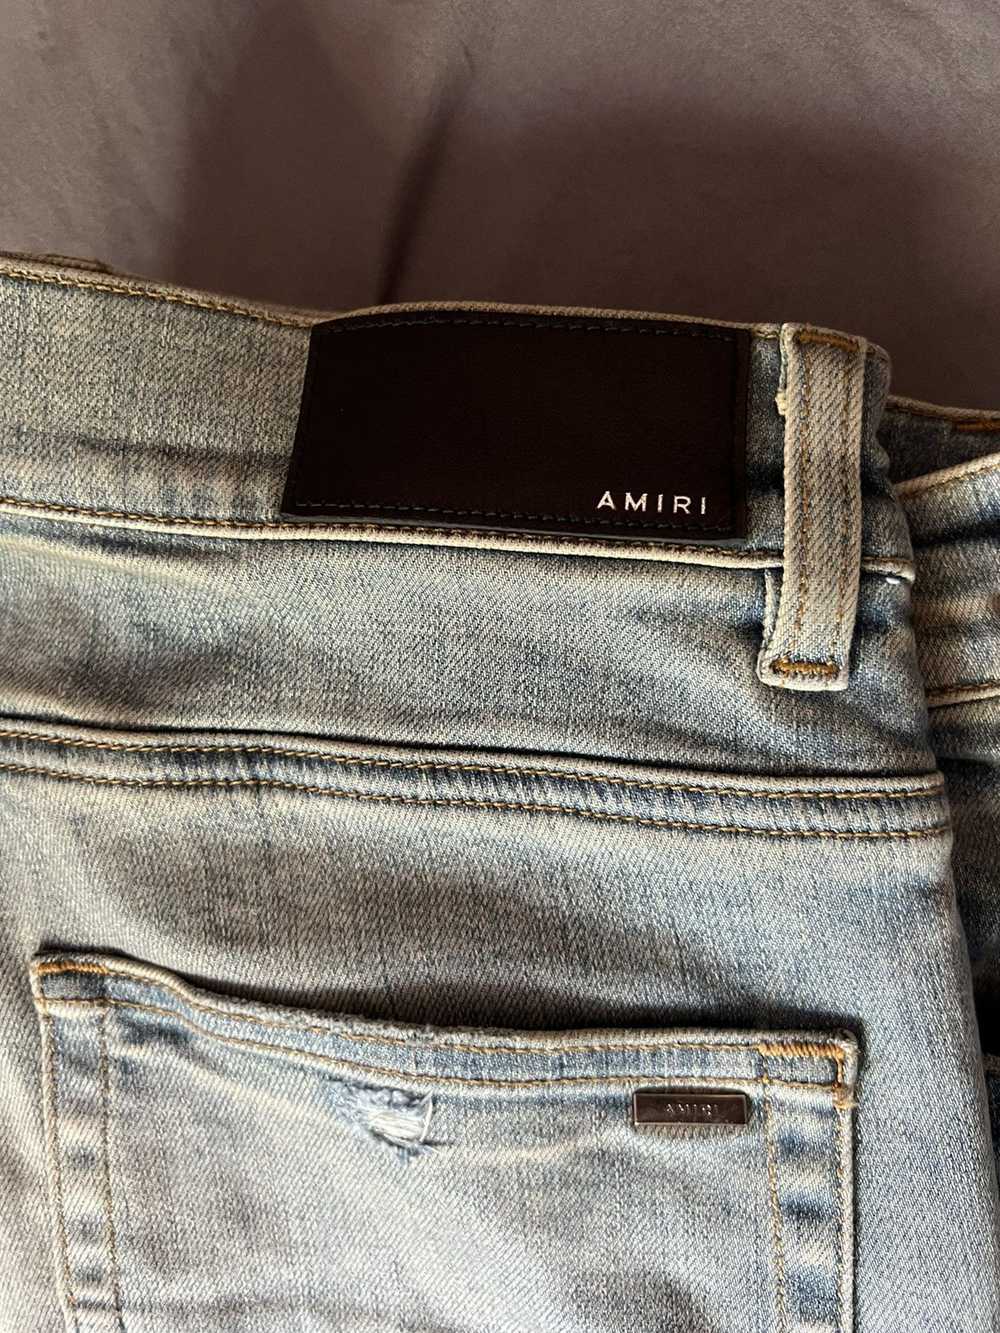 Amiri Amiri jeans - image 8